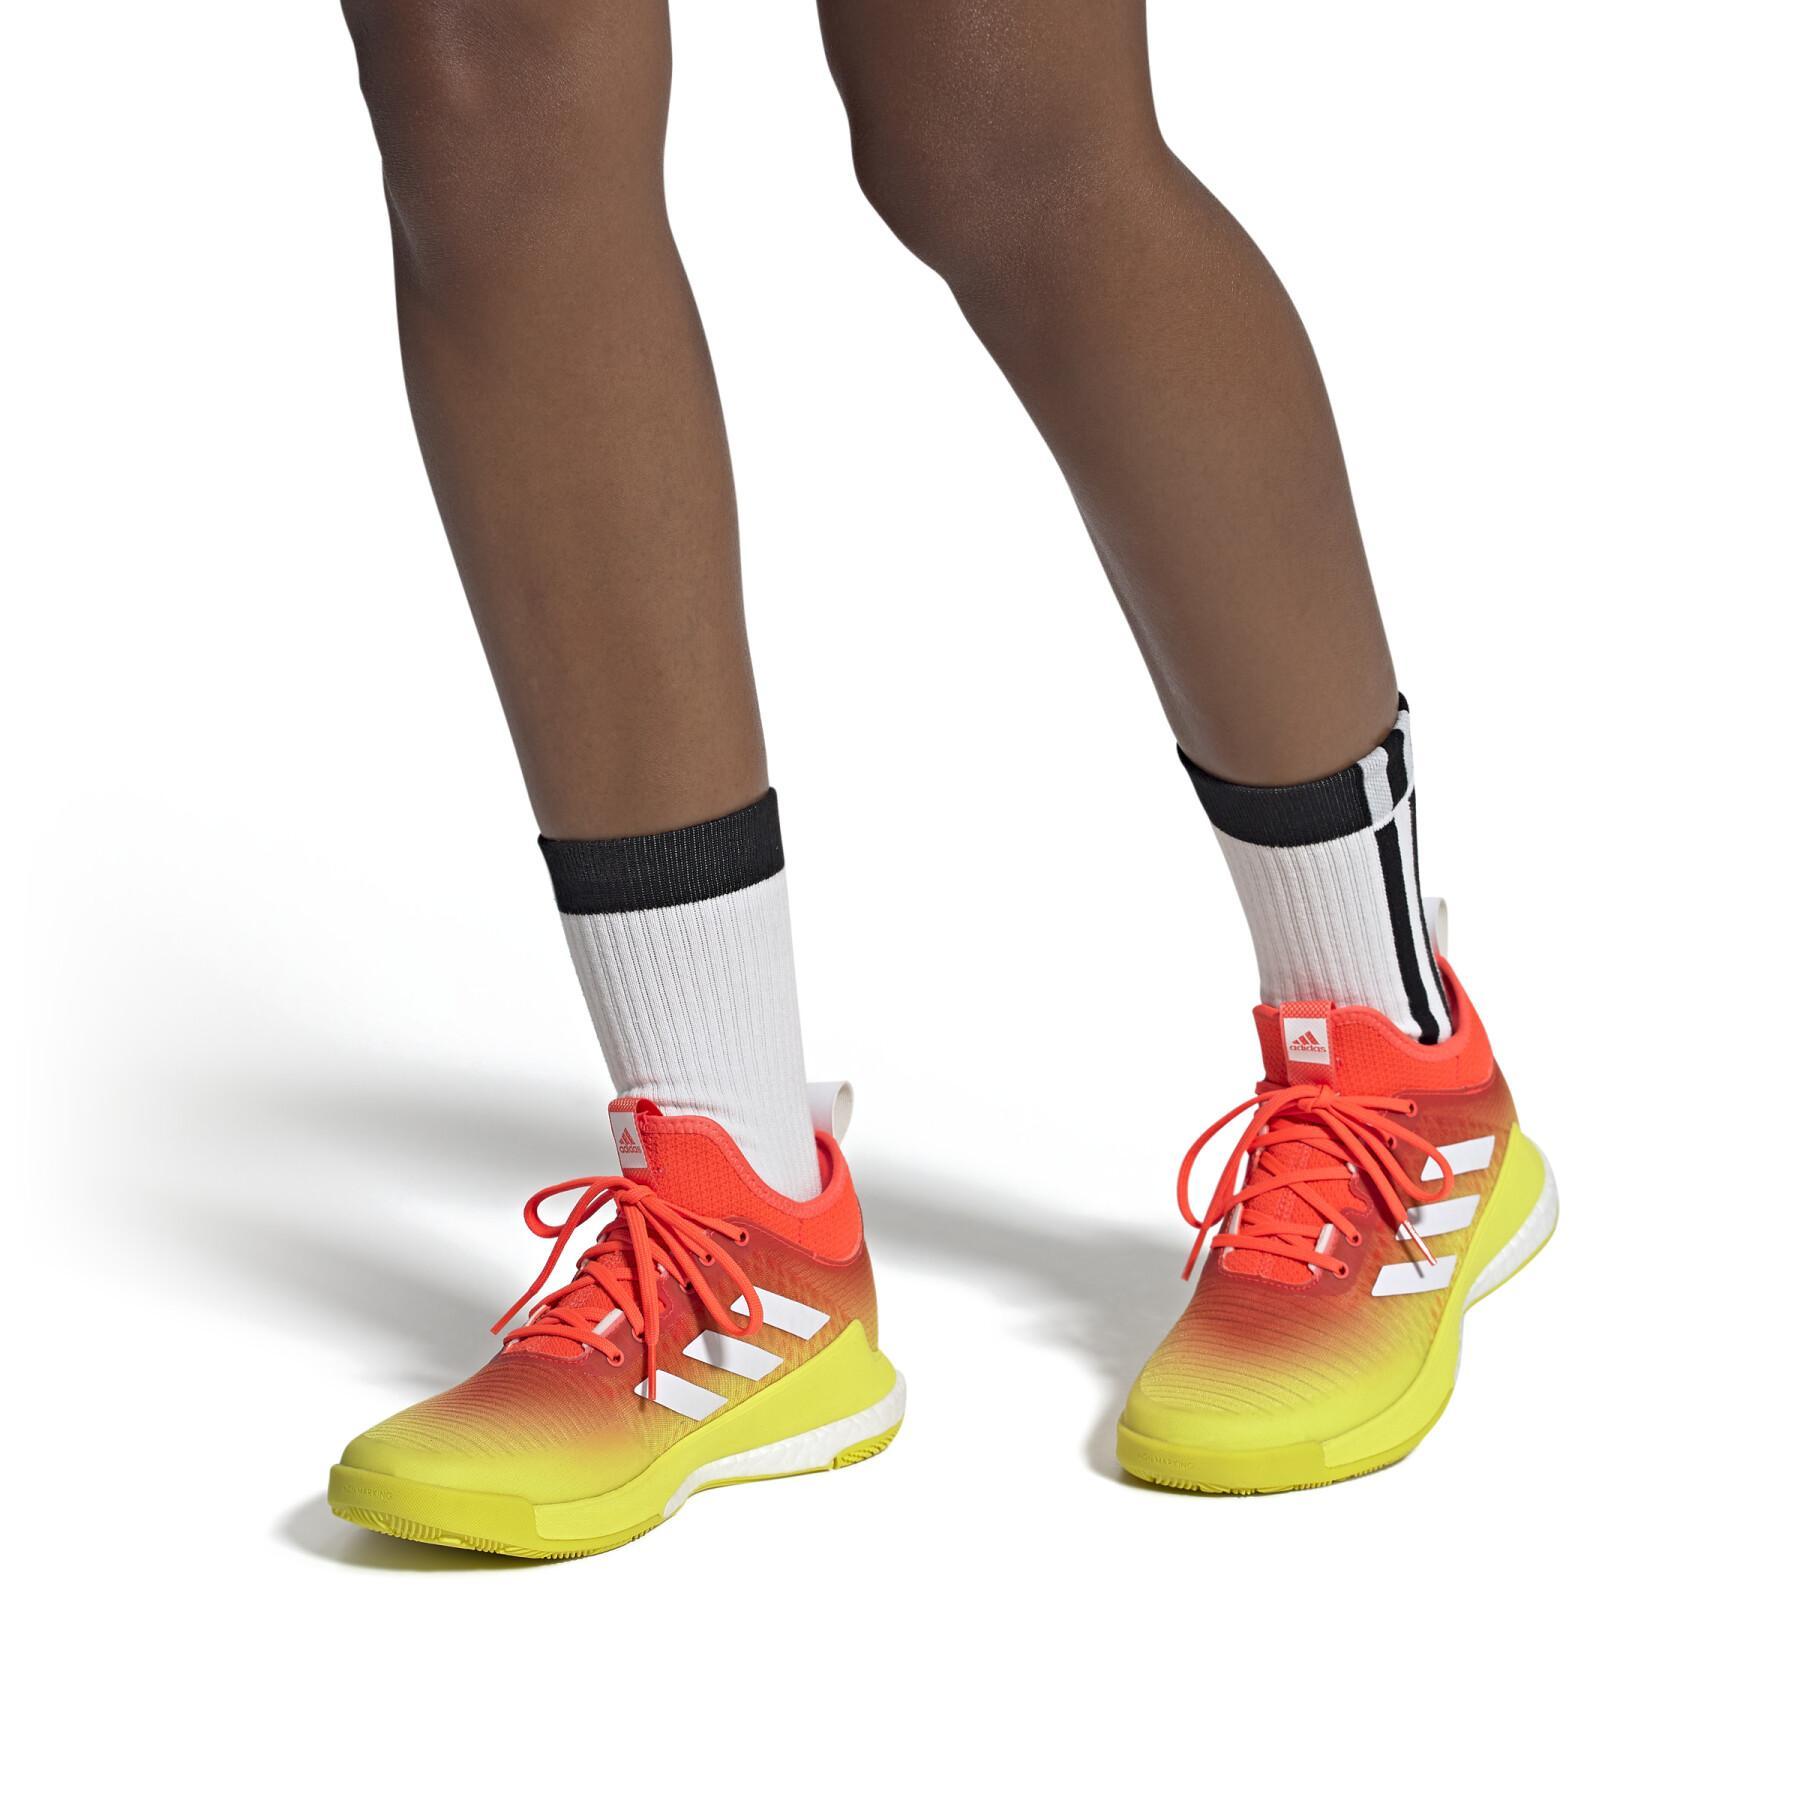 Damen Volleyball Schuhe crazyflight mid